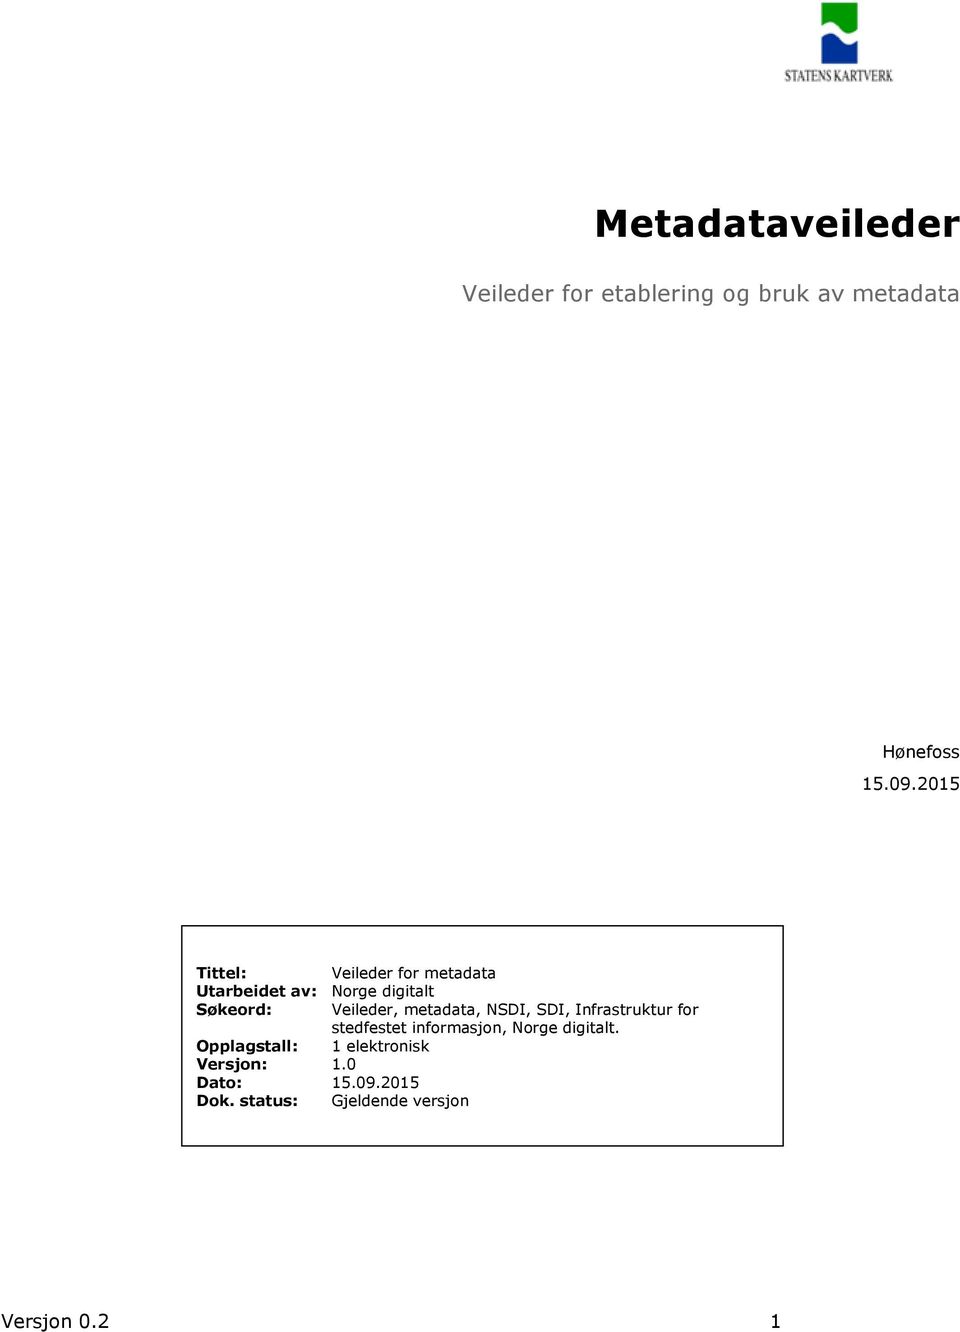 metadata, NSDI, SDI, Infrastruktur for stedfestet informasjon, Norge digitalt.